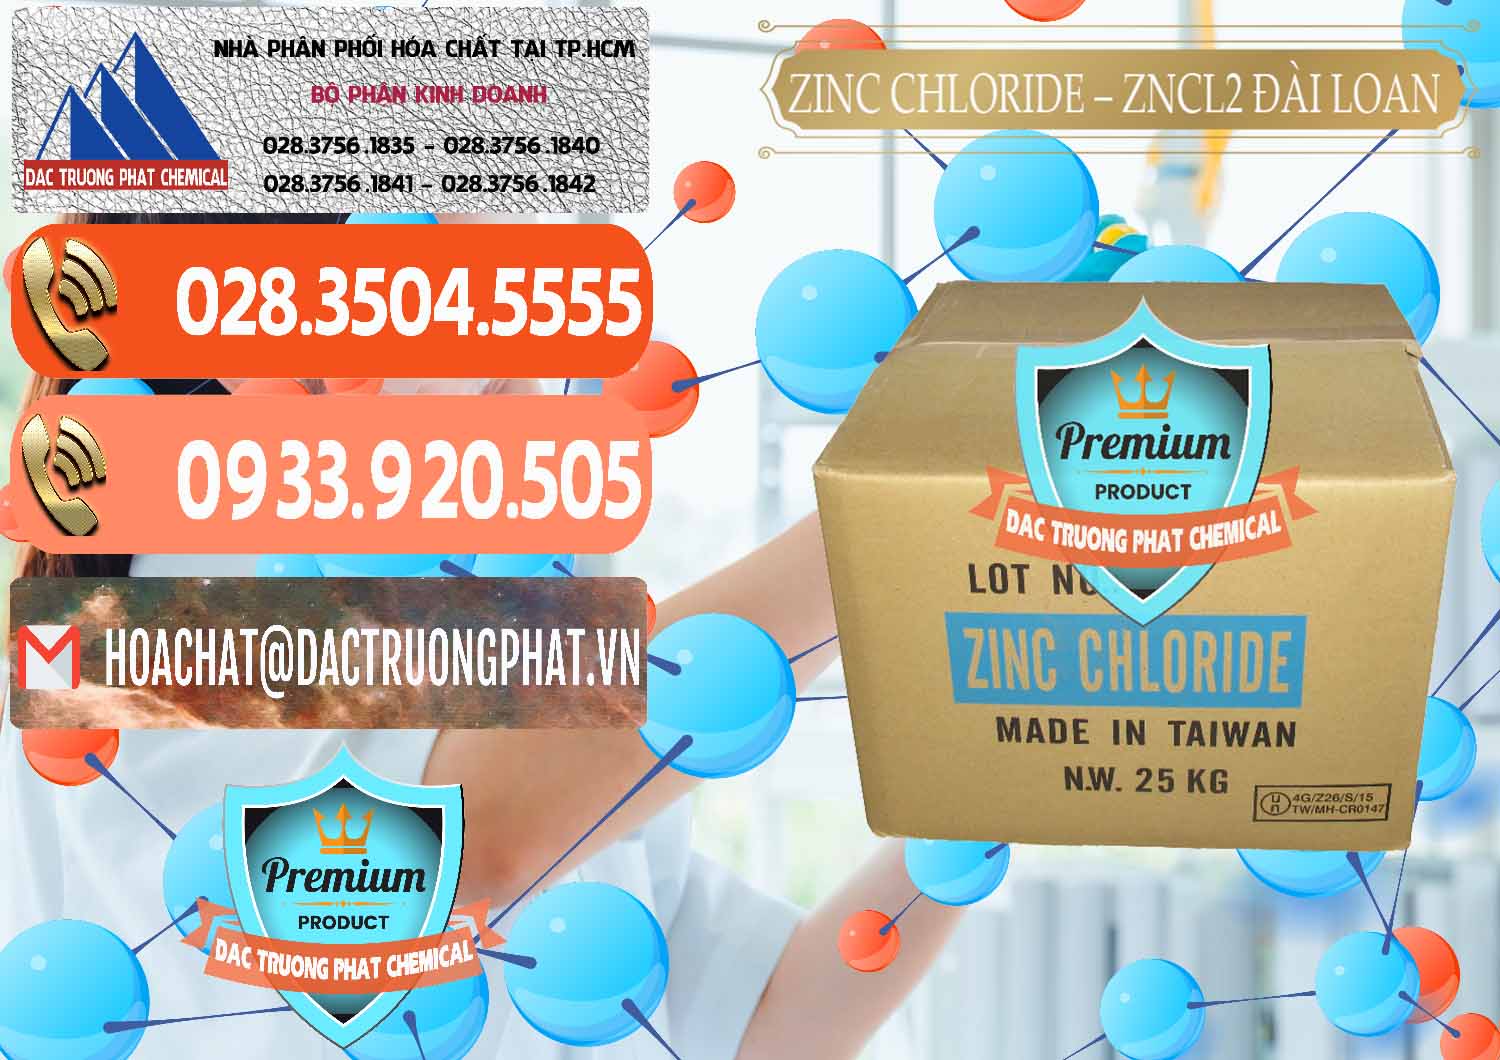 Công ty bán - cung ứng Zinc Chloride - ZNCL2 96% Đài Loan Taiwan - 0178 - Công ty cung cấp - phân phối hóa chất tại TP.HCM - hoachatmientay.com